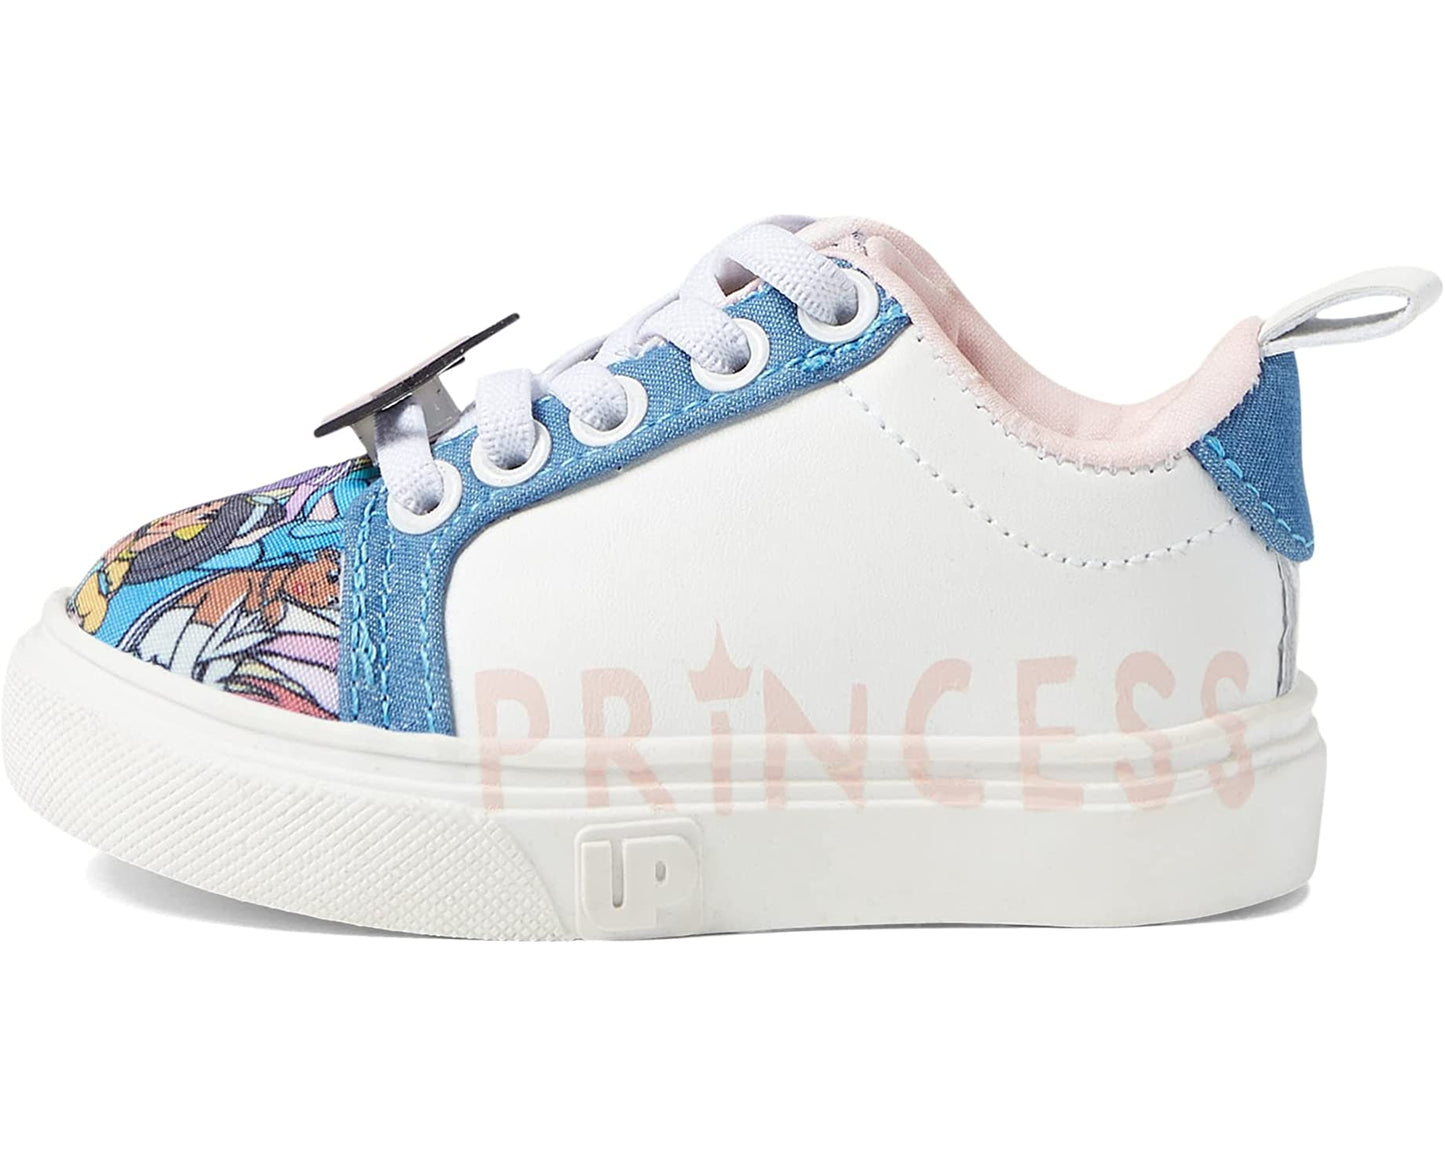 Disney Princess Low Top Sneakers